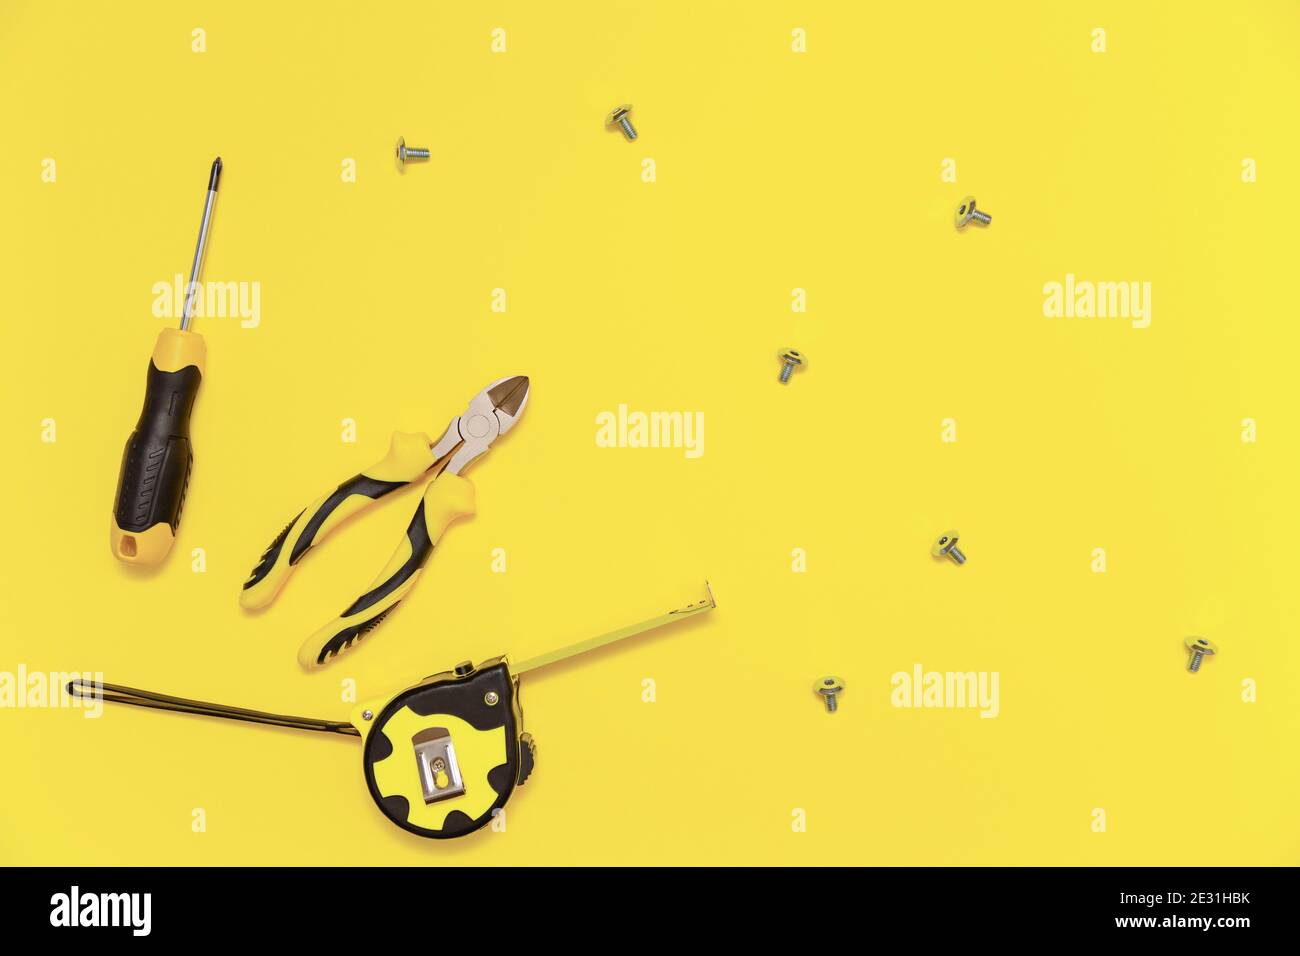 Eine Flachlage mit einem Satz von Tischwerkzeugen, Schraubendreher, Schneidzange, Maßband und Schrauben auf gelb leuchtenden Hintergrund. Farben des Jahres 2021. Stockfoto